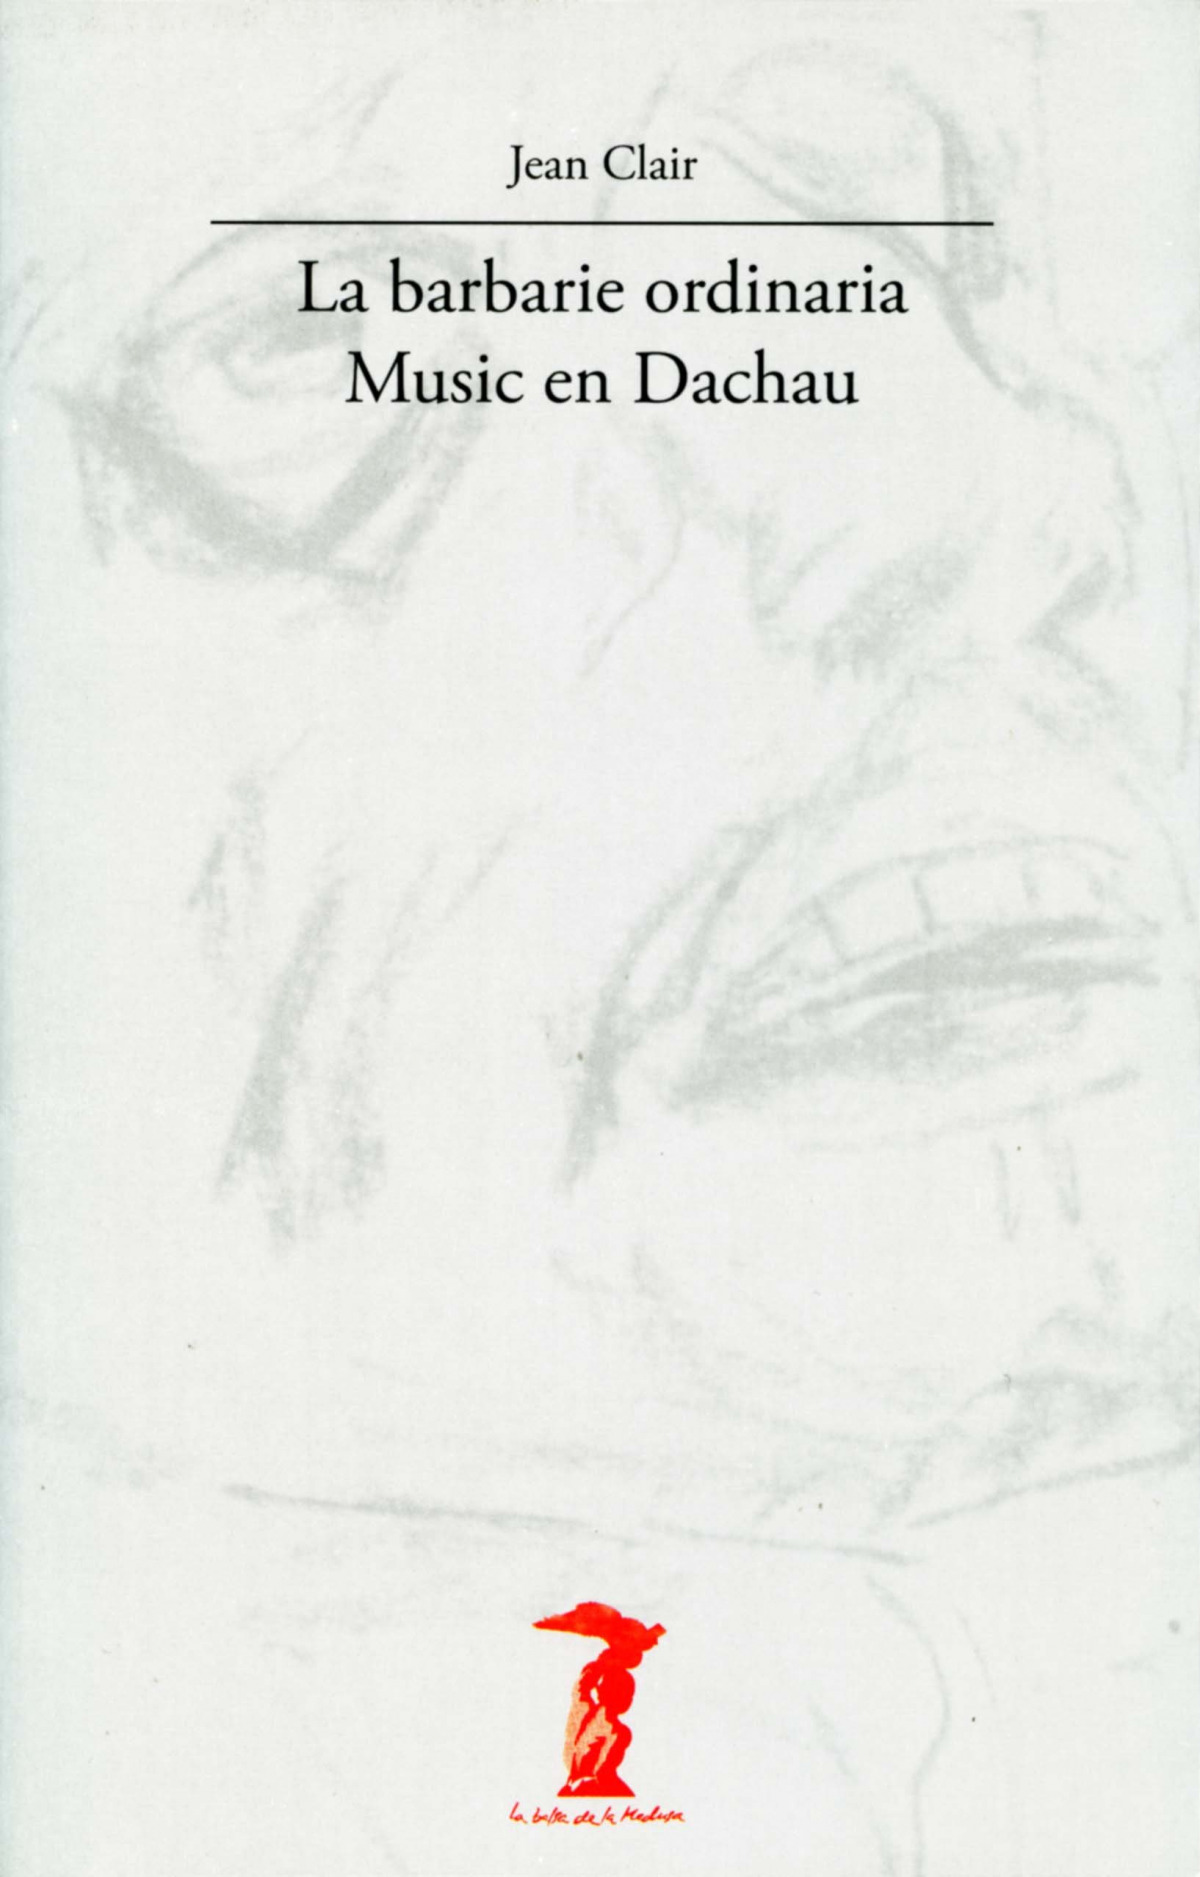 Barbarie ordinaria music en dachau - Clair, Jean